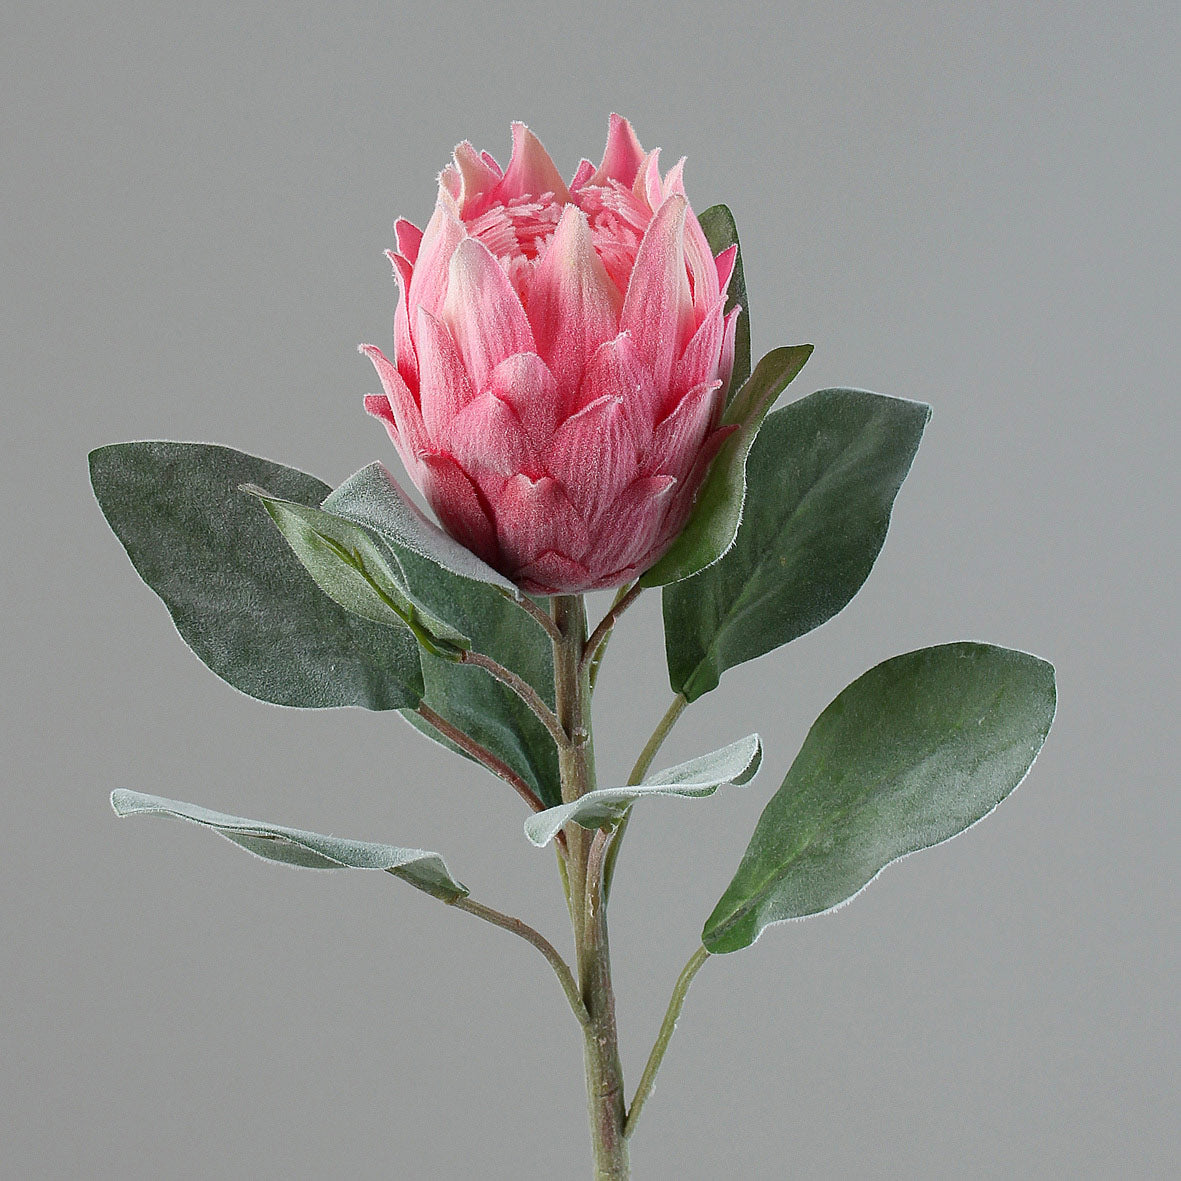 Bársonyos tapintású, pink színű szálas mű protea virág.